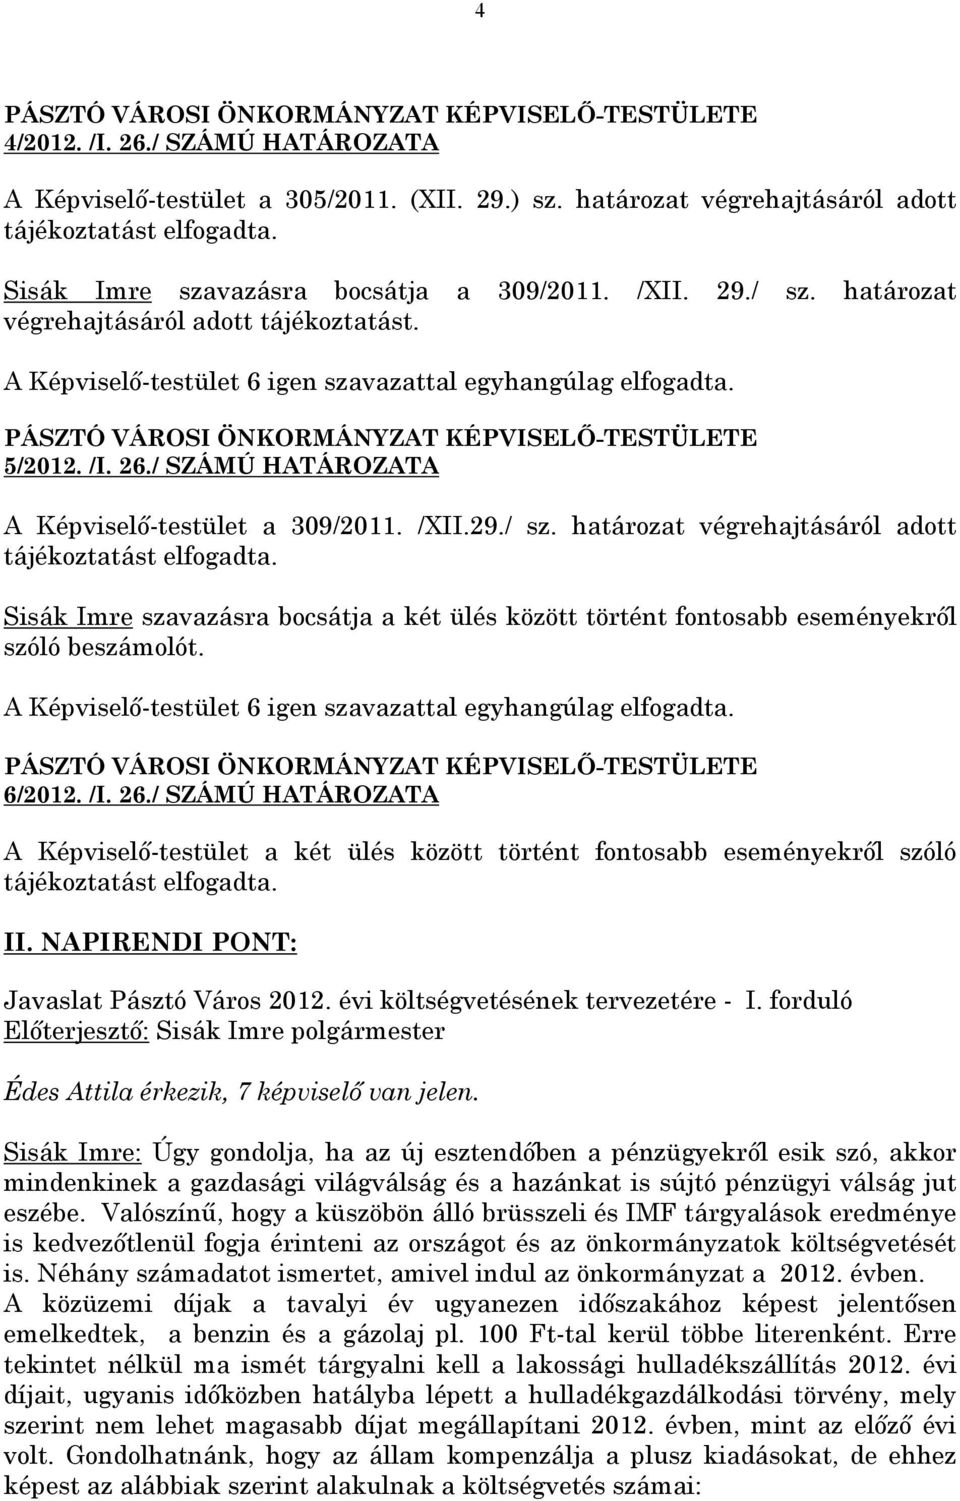 PÁSZTÓ VÁROSI ÖNKORMÁNYZAT KÉPVISELŐ-TESTÜLETE 5/2012. /I. 26./ SZÁMÚ HATÁROZATA A Képviselő-testület a 309/2011. /XII.29./ sz. határozat végrehajtásáról adott tájékoztatást elfogadta.